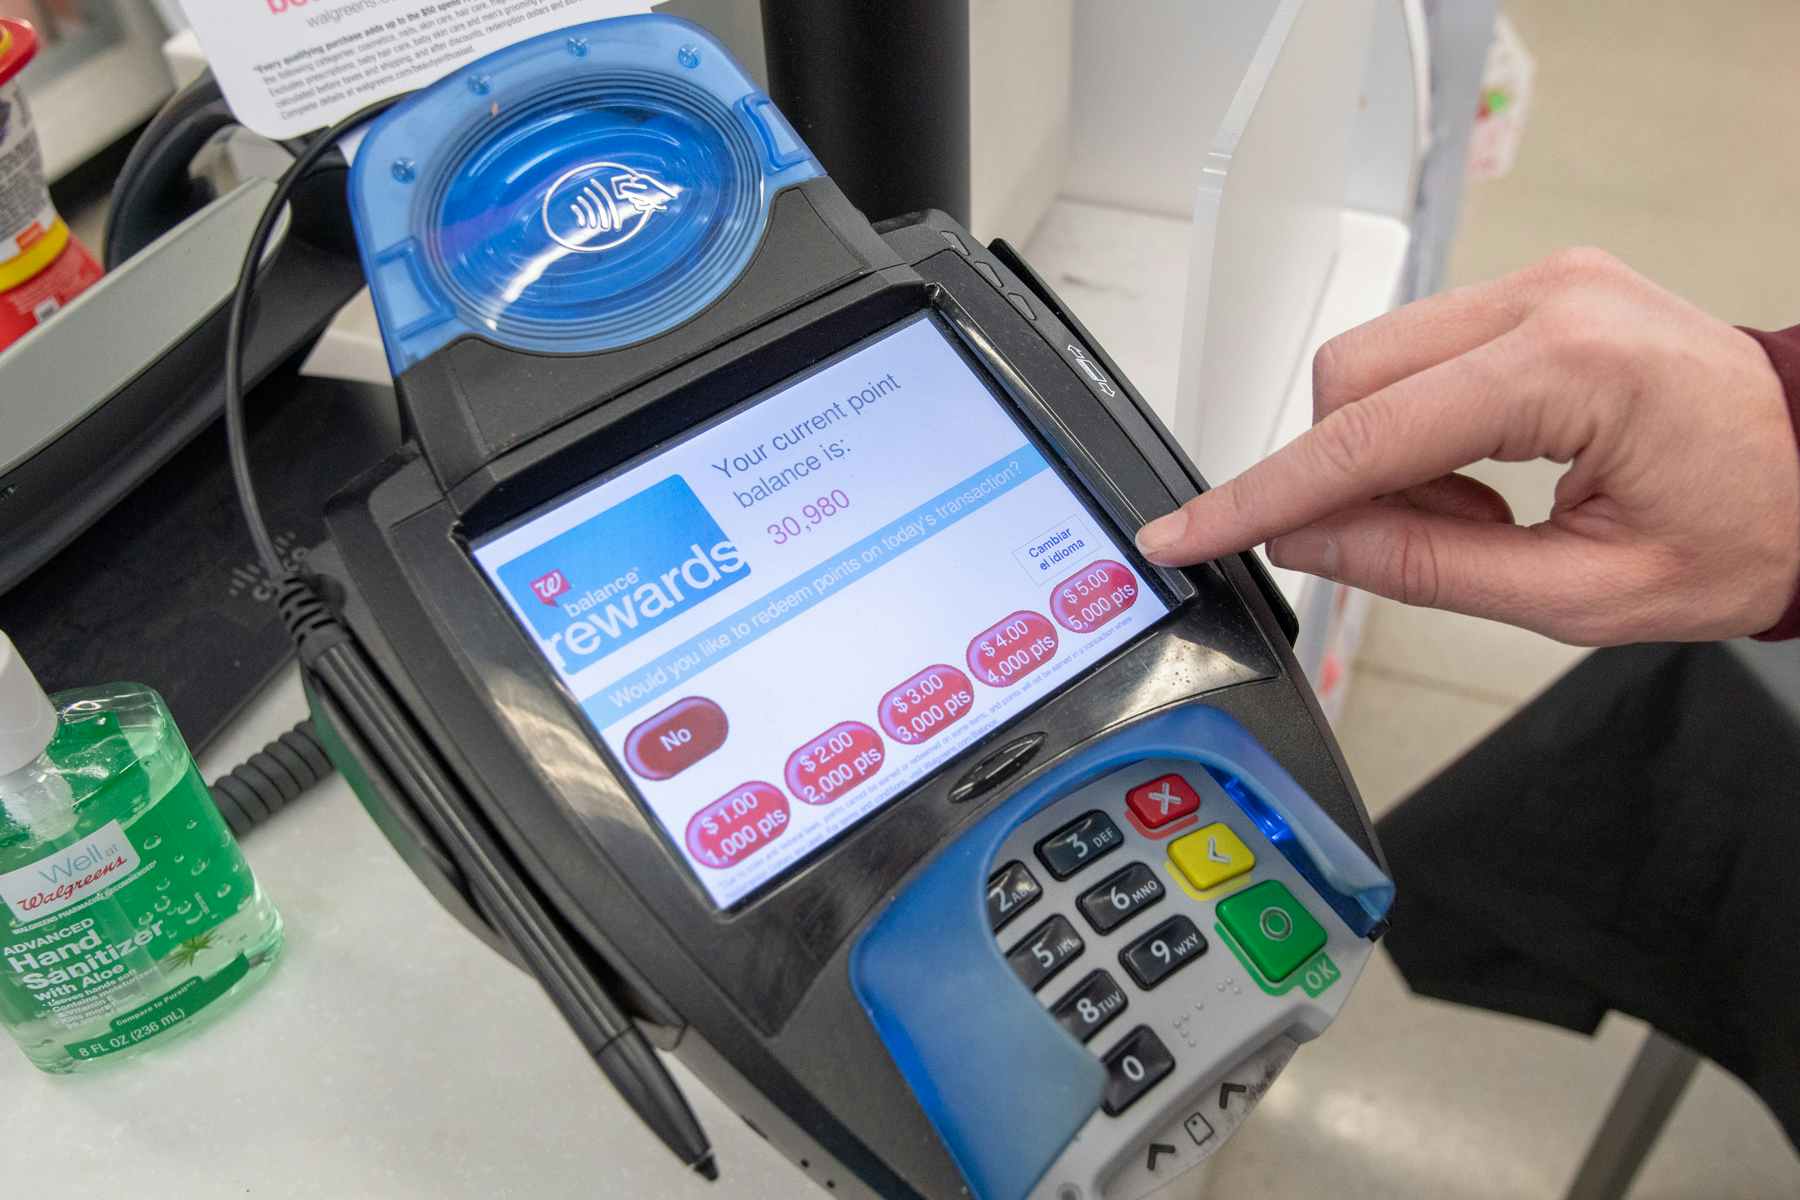 Walgreens rewards on credit card reader at checkout.